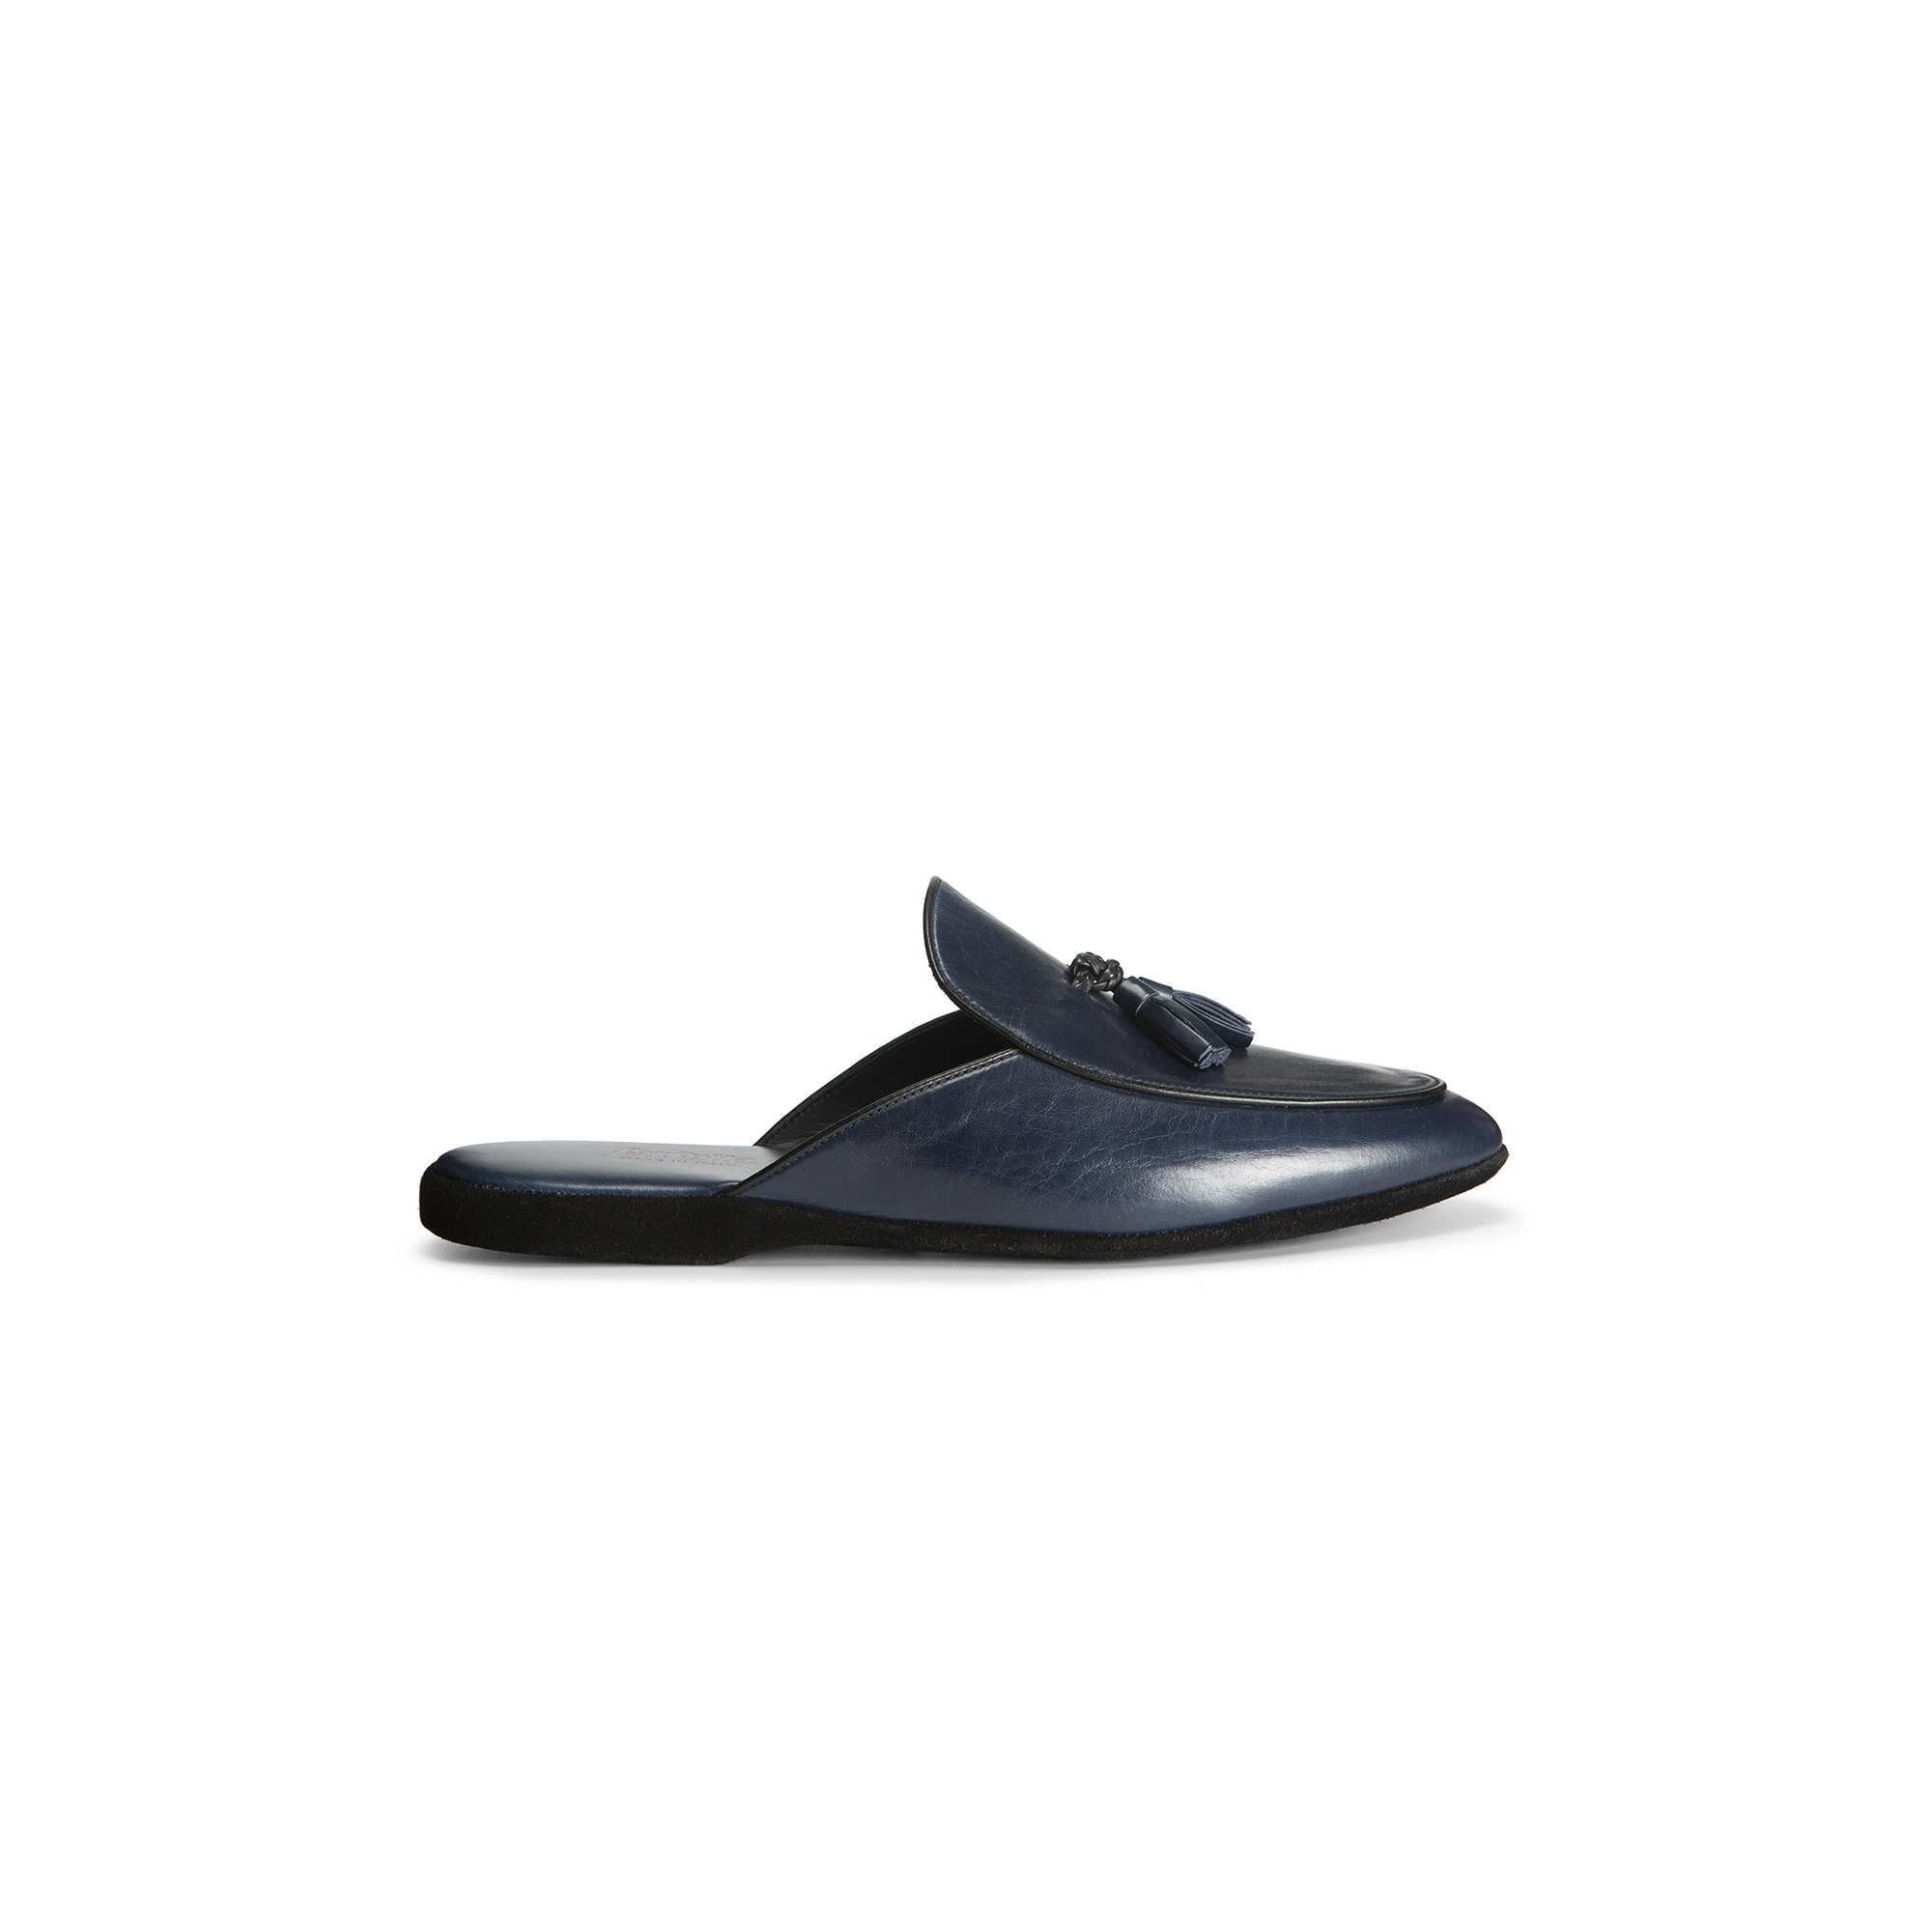 Pantofola aperta interno vitello blu - Farfalla italian slippers